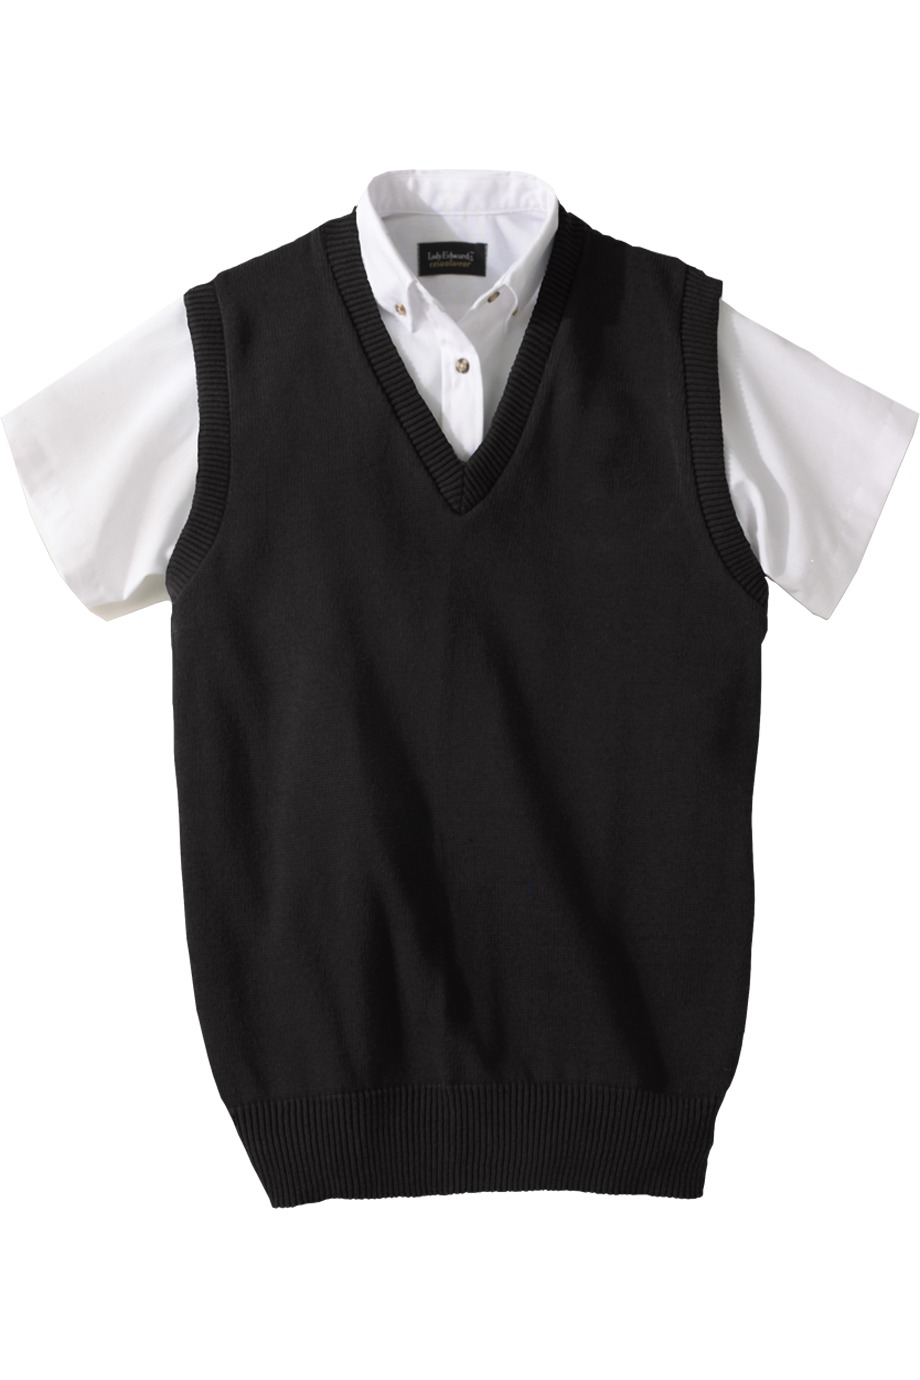 Edwards Garment 791 - Jersey Stitch V-Neck Vest